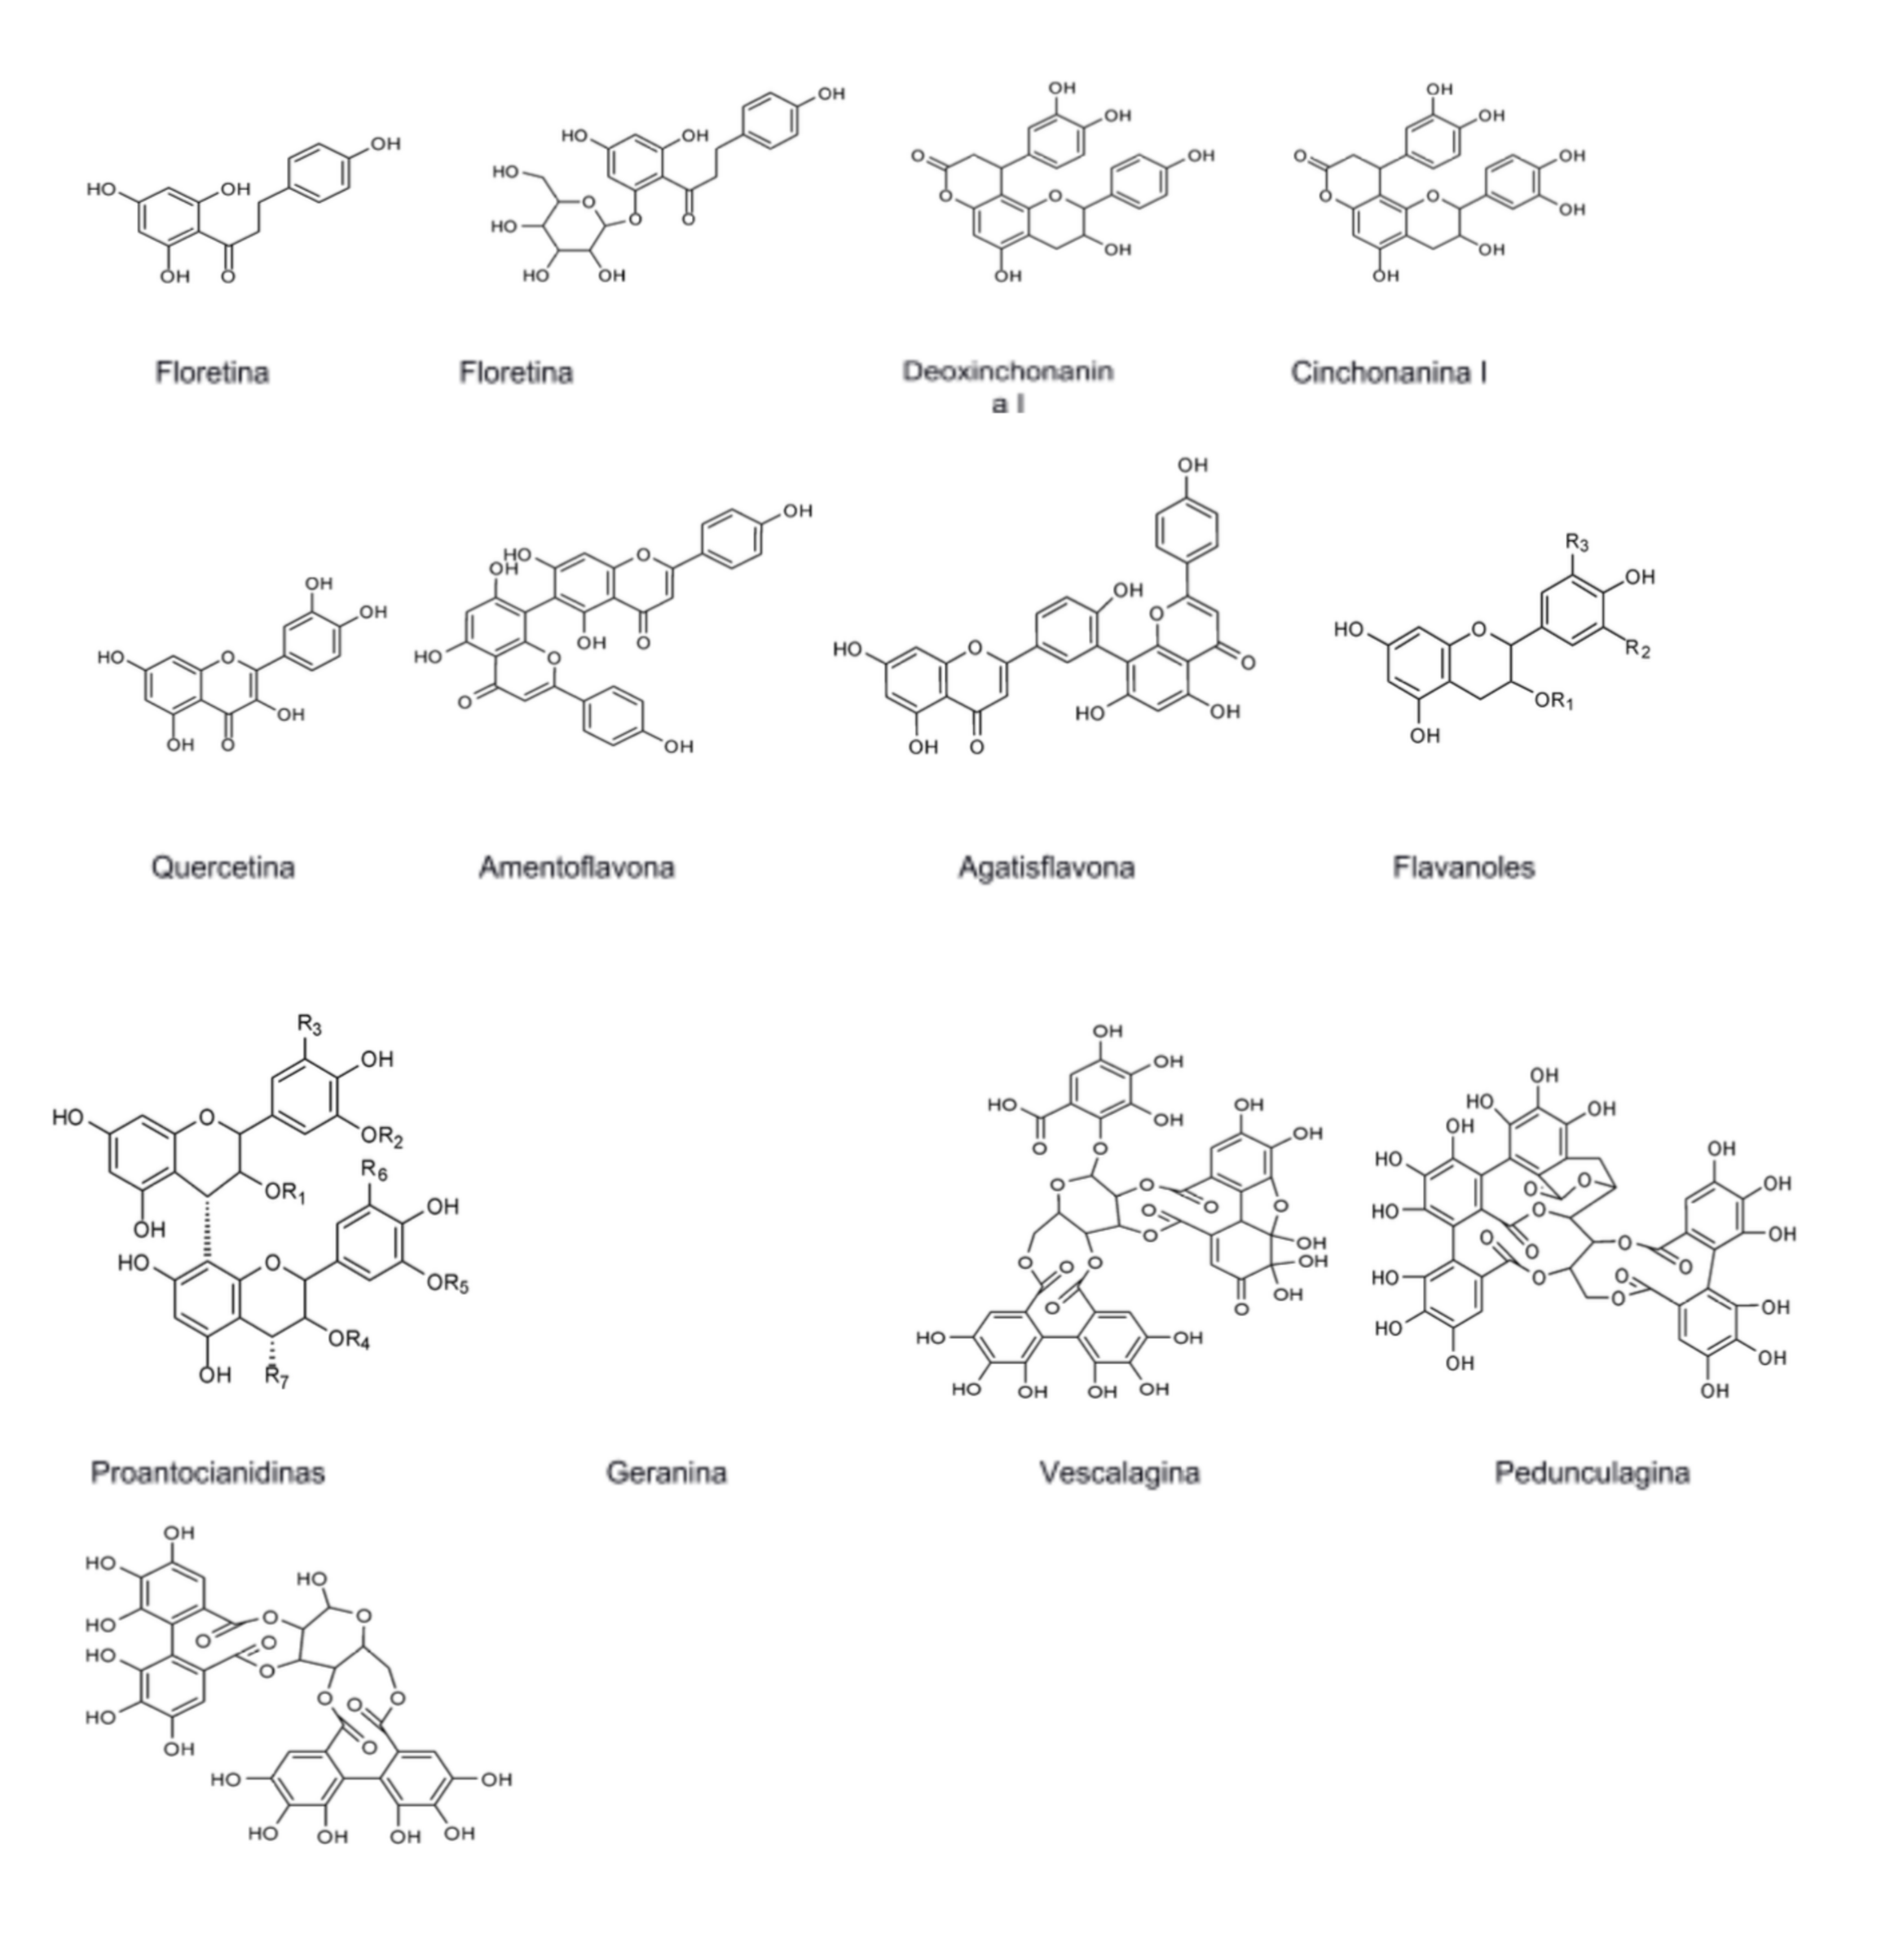  Estructura química base de principales compuestos bioactivos en el fruto de Psidium friedrichsthalianum.